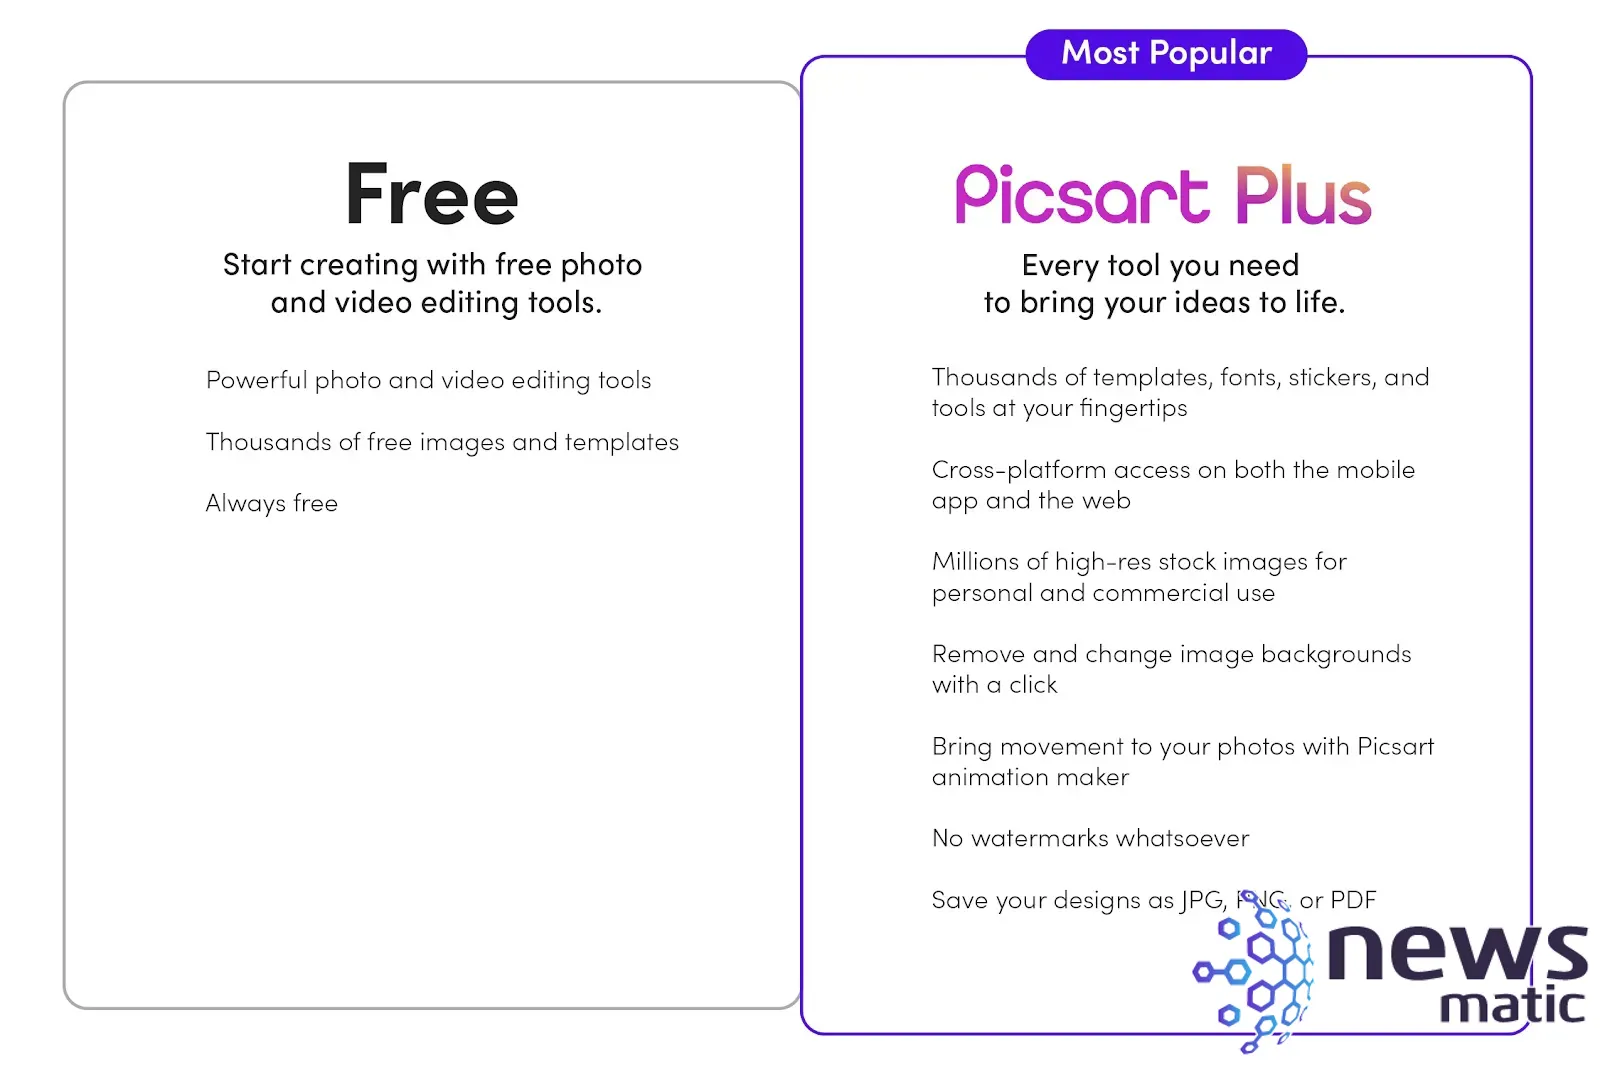 Descubre por qué Picsart Plus es la herramienta de edición de fotos más descargada del 2022 - Tecnología y trabajo | Imagen 2 Newsmatic